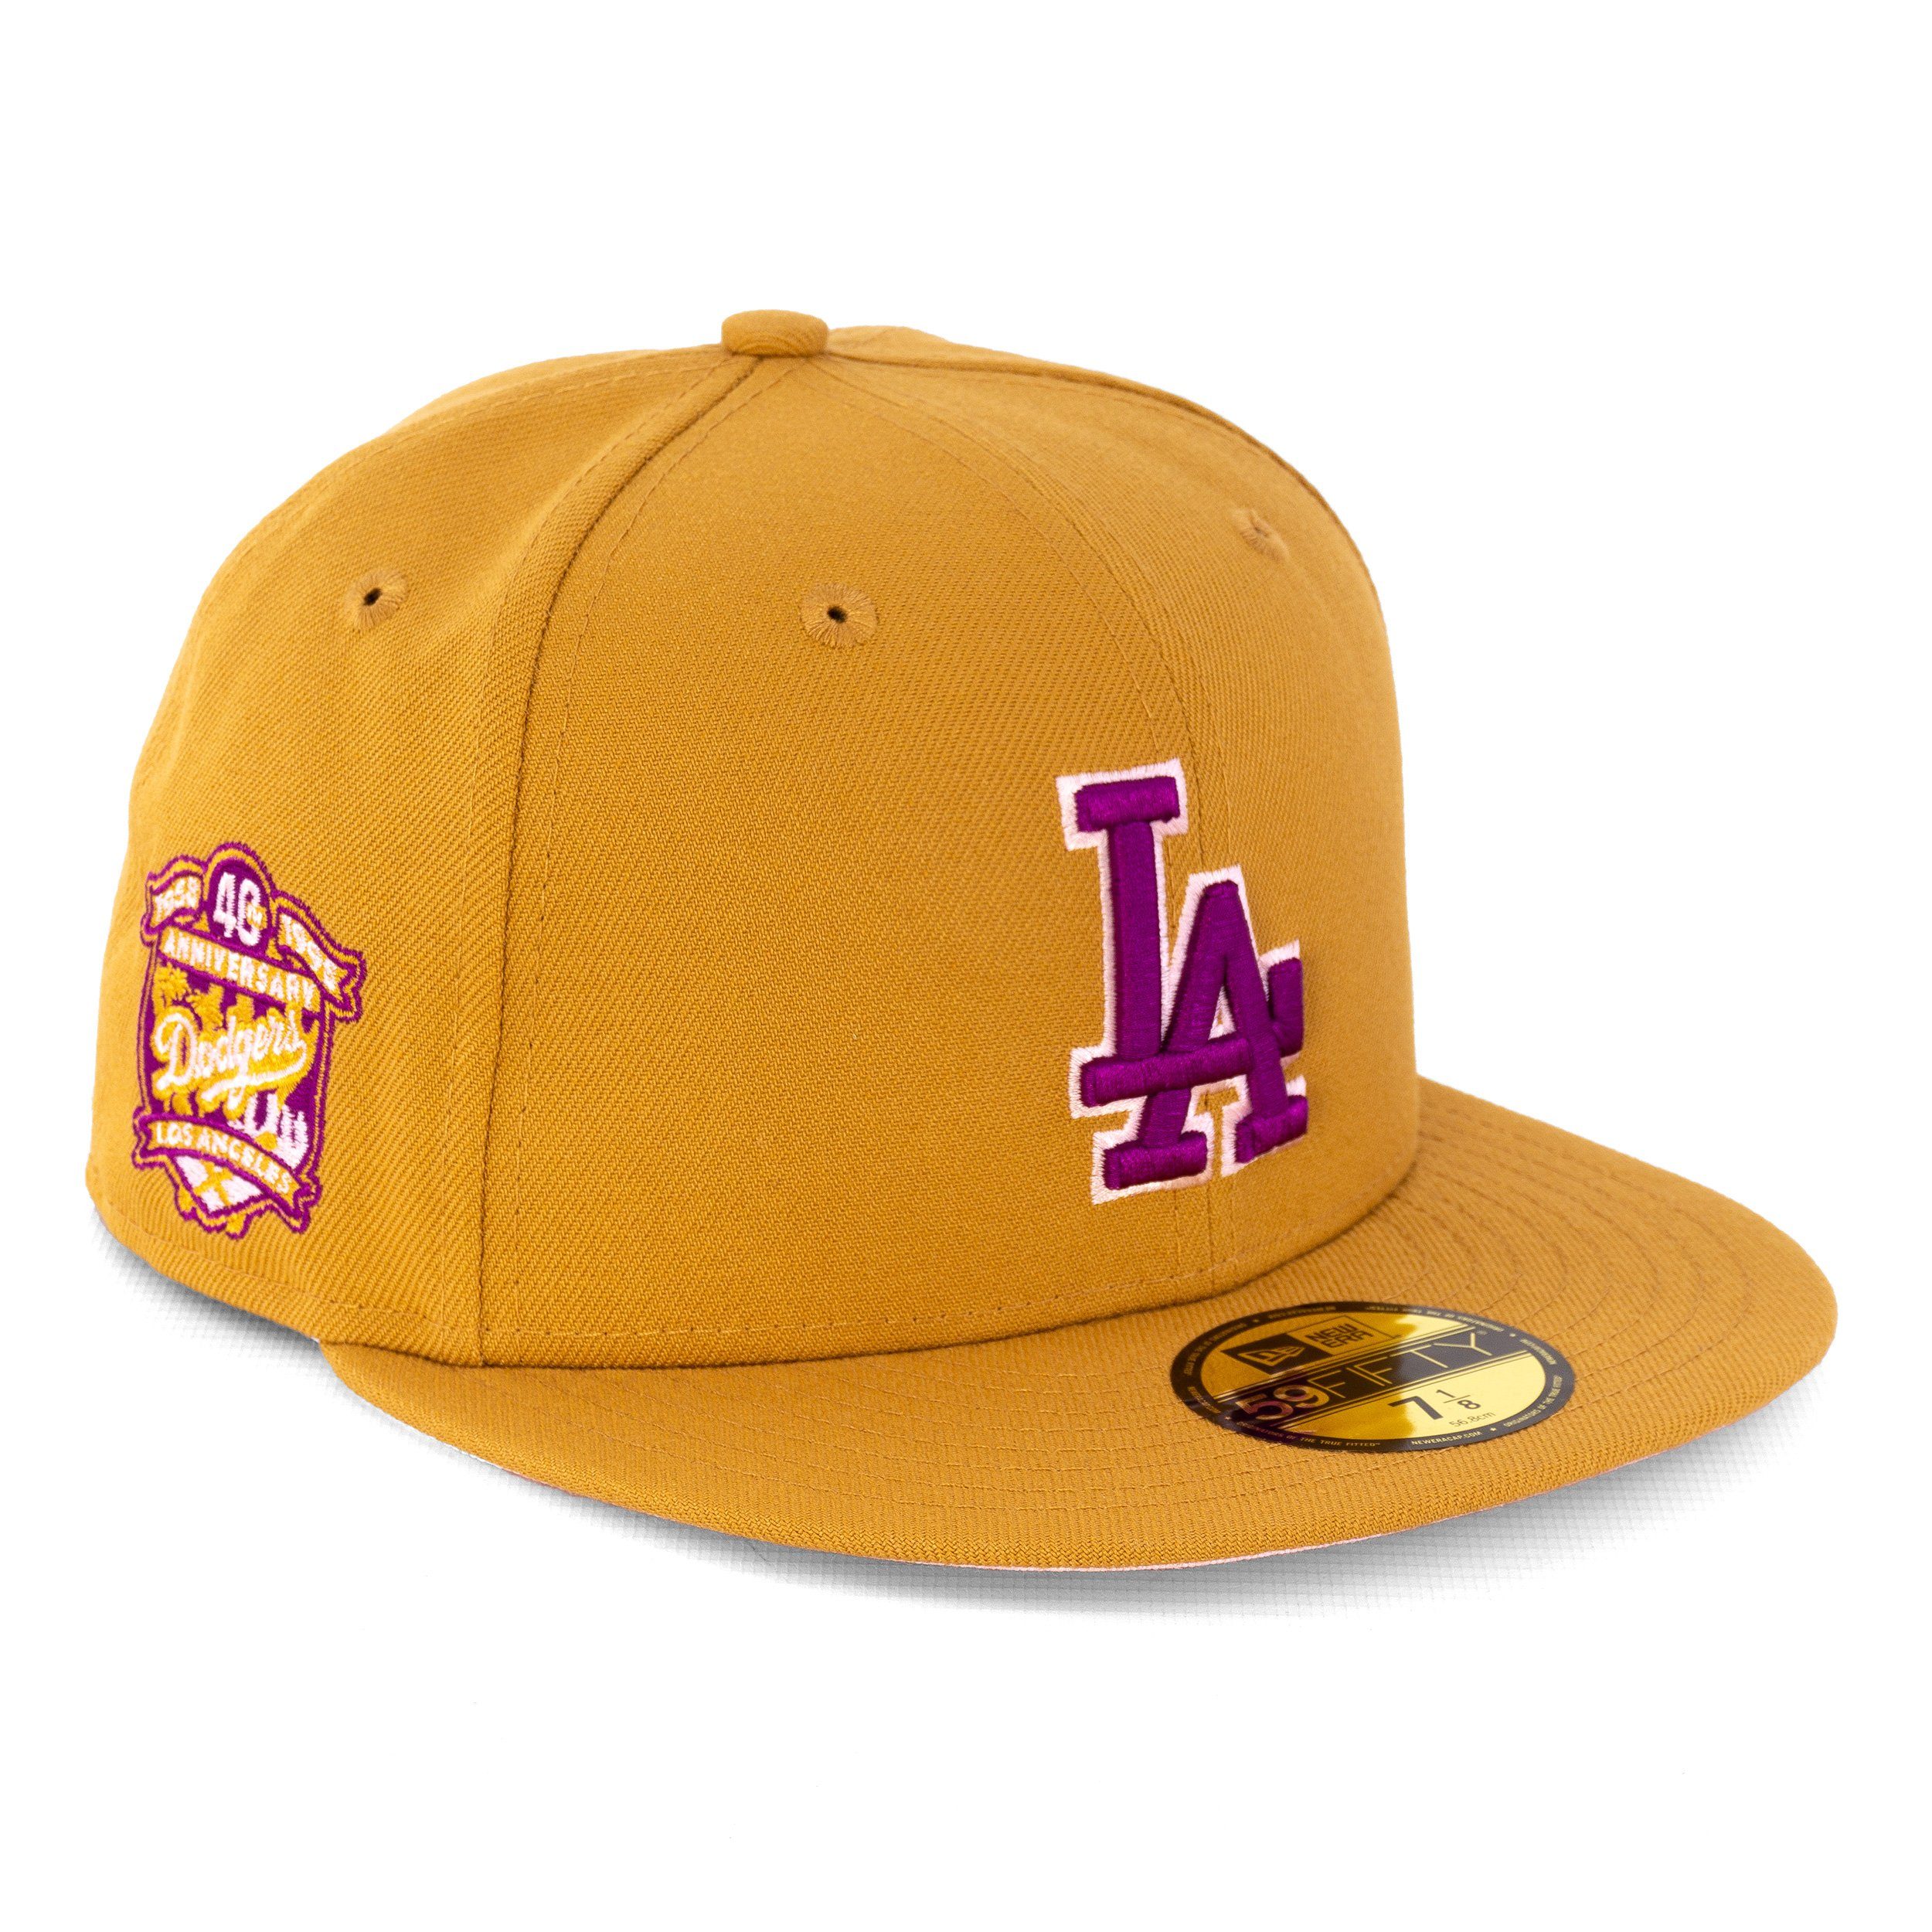 New Era Baseball Cap Cap New Era 59 Fifty Los Angeles Dodgers 40TH (1-St)